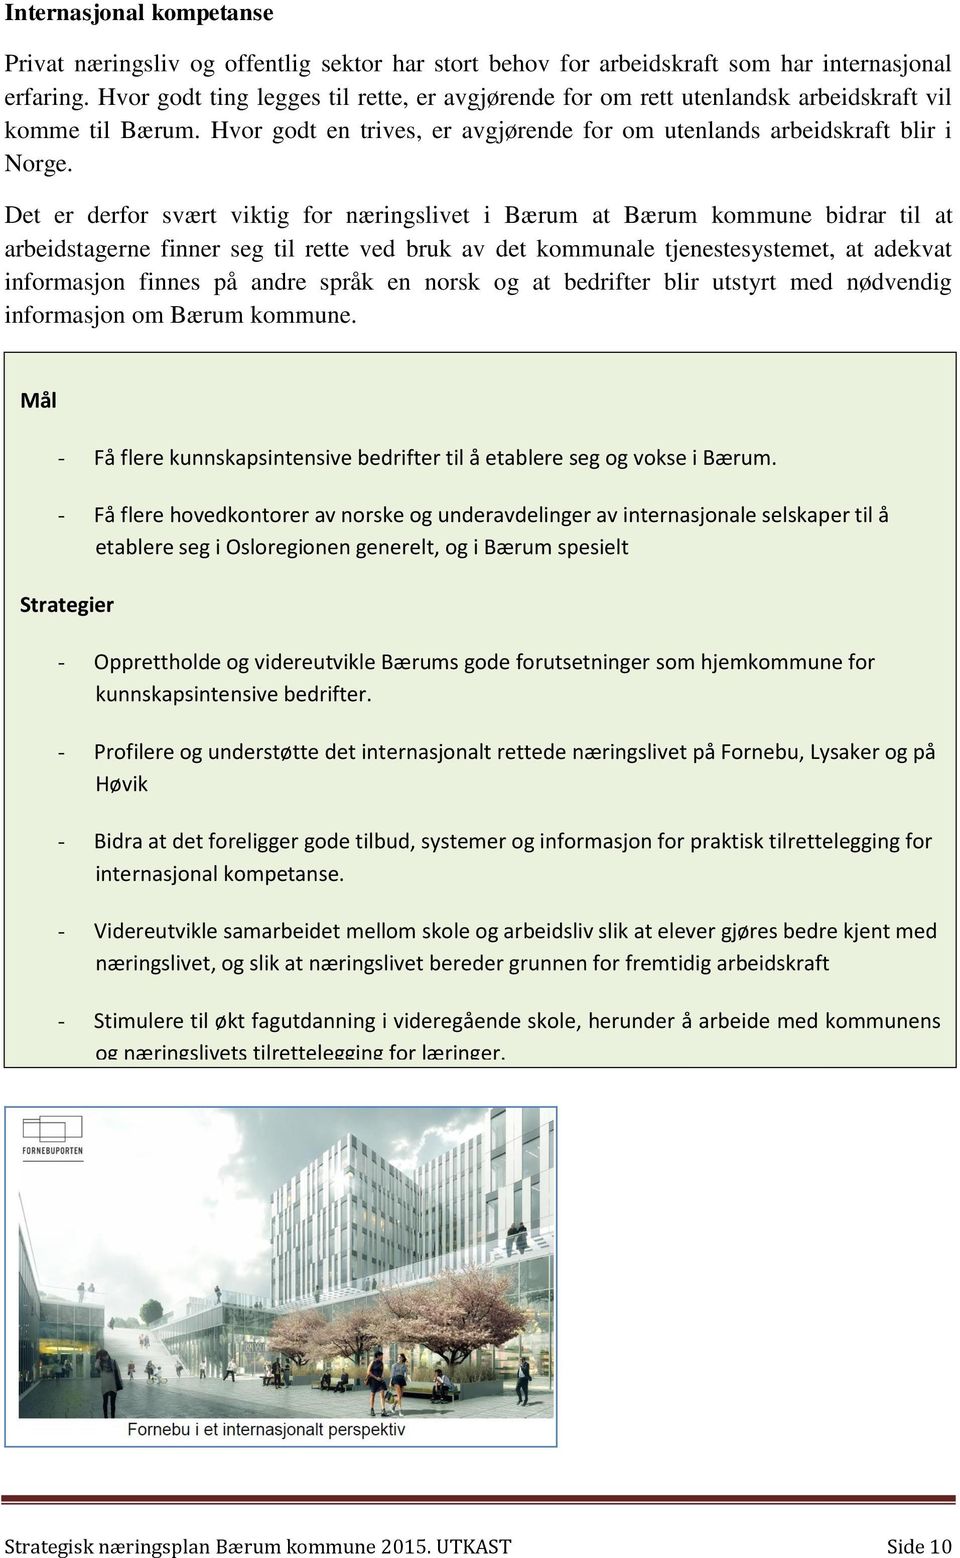 Det er derfor svært viktig for næringslivet i Bærum at Bærum kommune bidrar til at arbeidstagerne finner seg til rette ved bruk av det kommunale tjenestesystemet, at adekvat informasjon finnes på